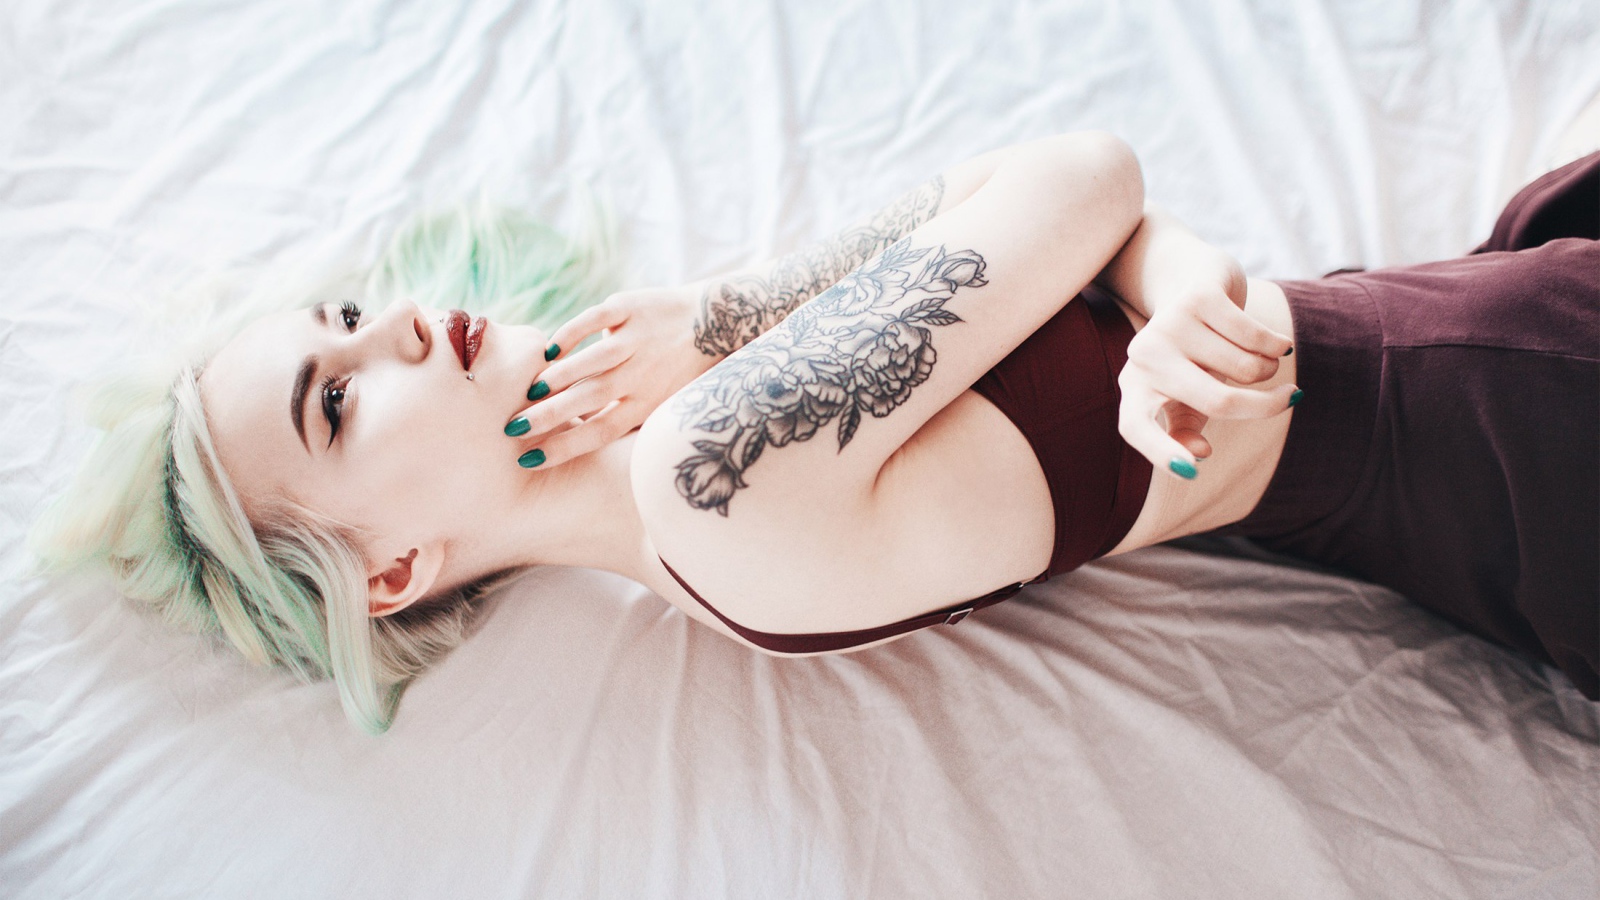 Девушка с татуировкой на руке лежит на кровати 